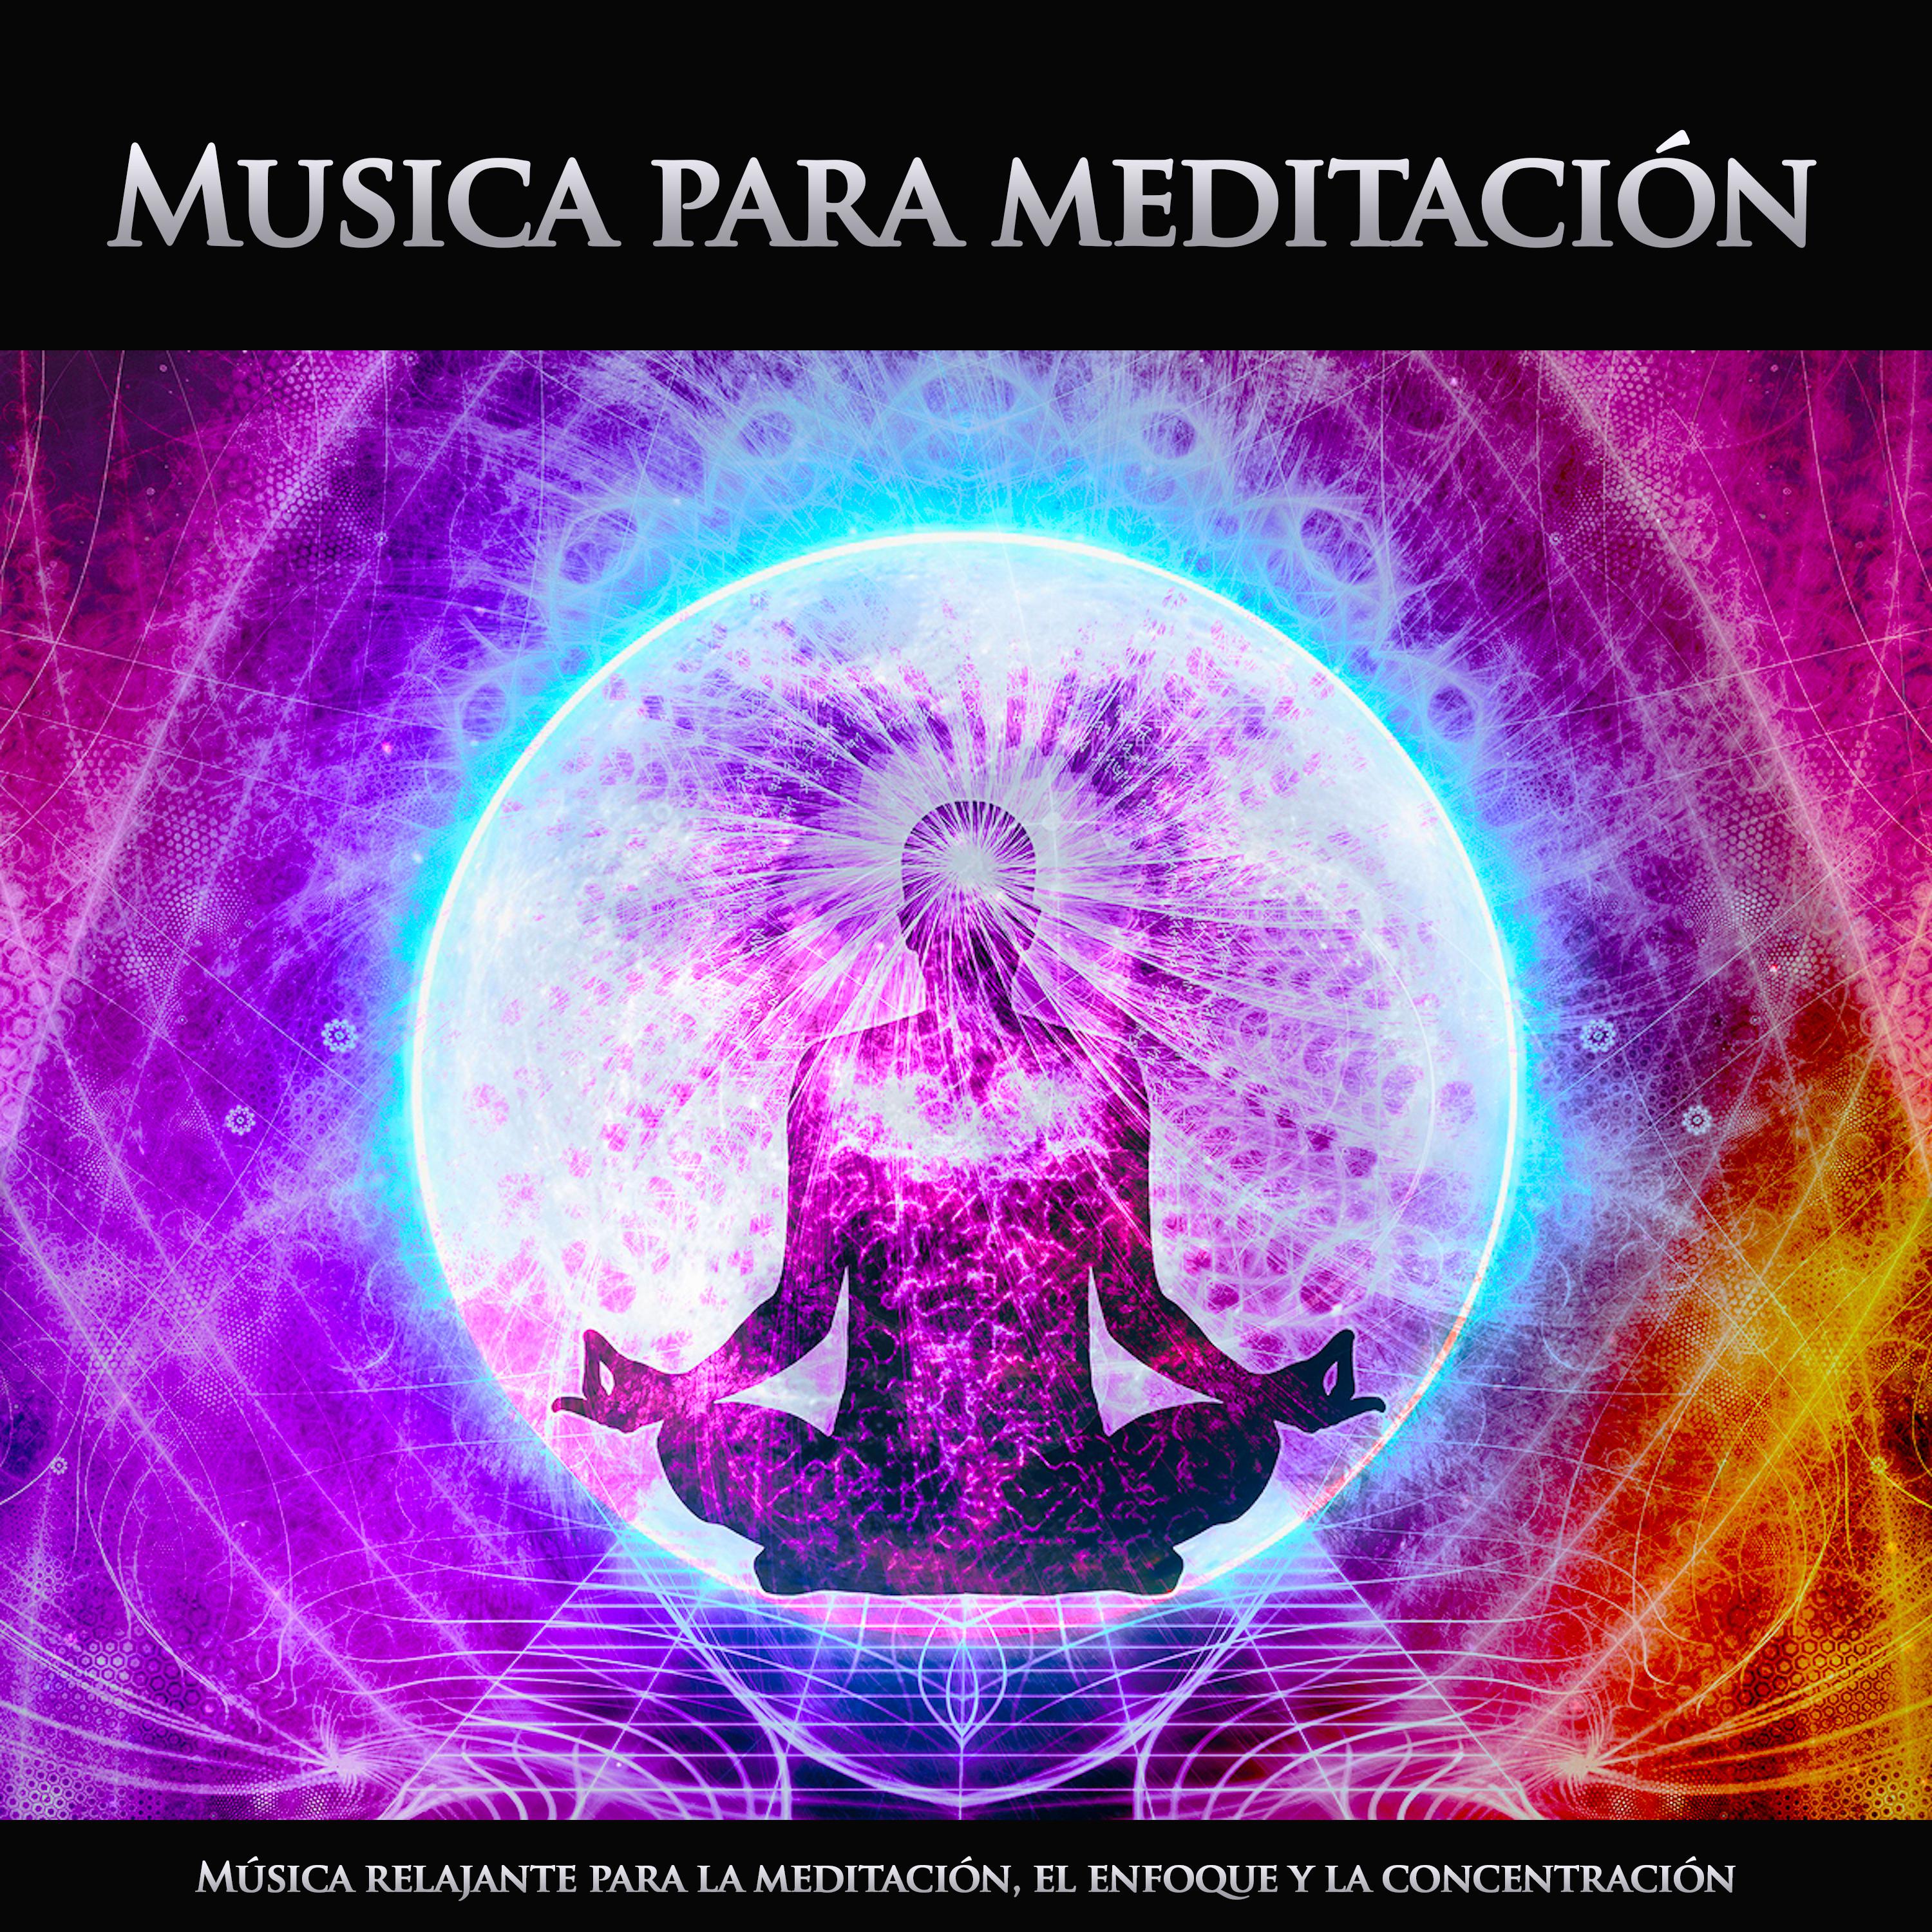 Musica para meditación: Música relajante para la meditación, el enfoque y la concentración